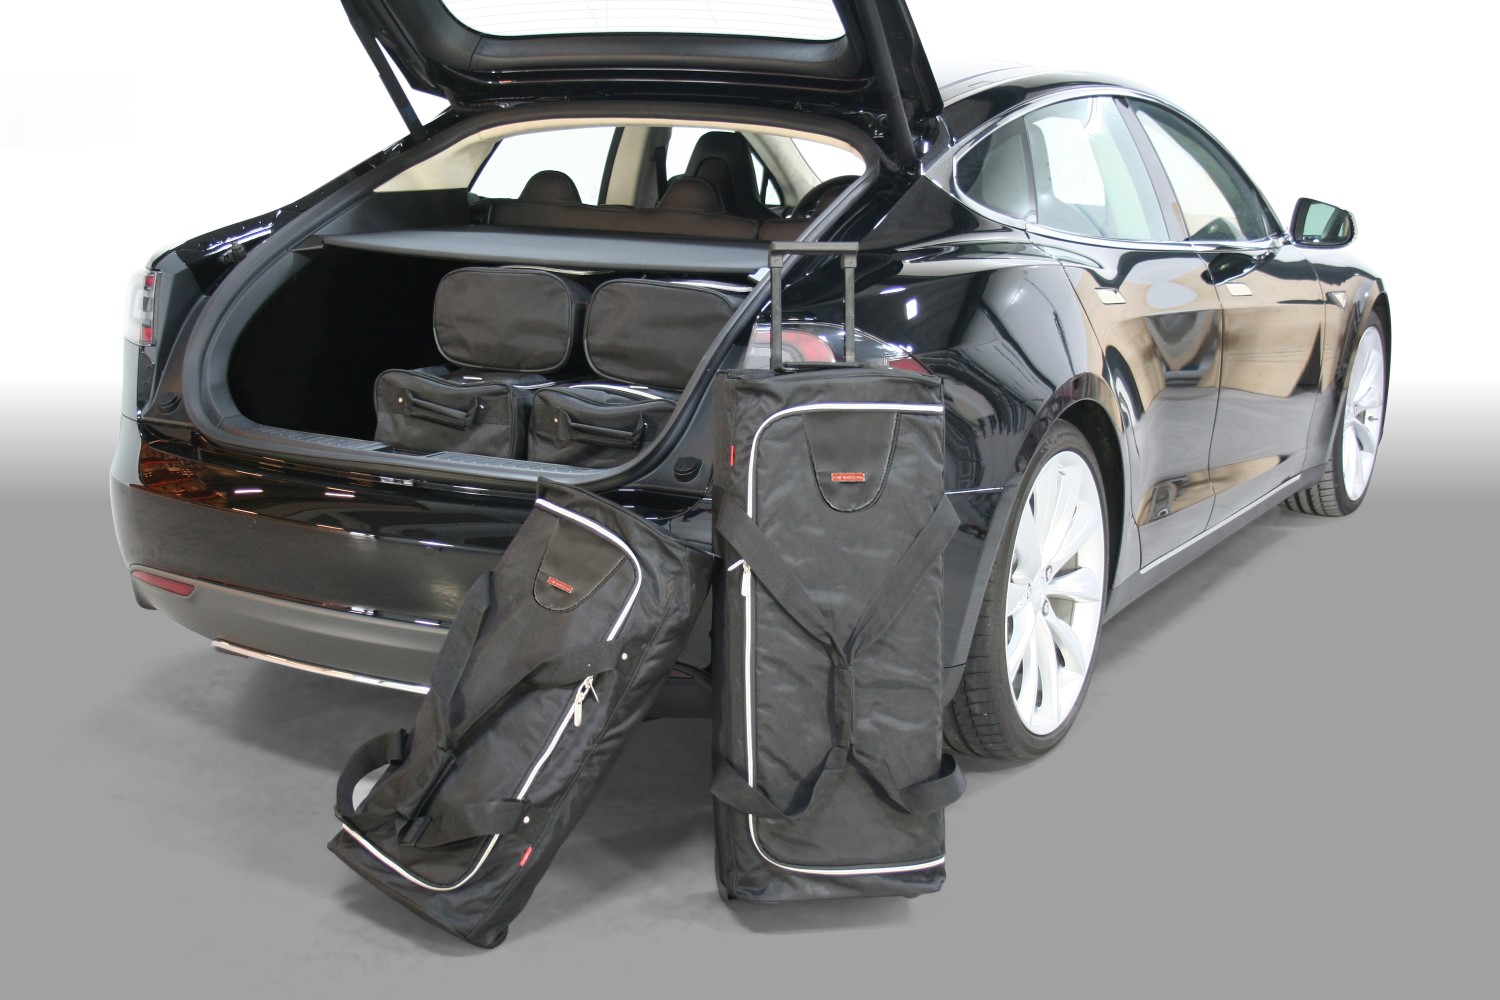 Reistassenset Tesla Model S 2012-heden 5-deurs hatchback